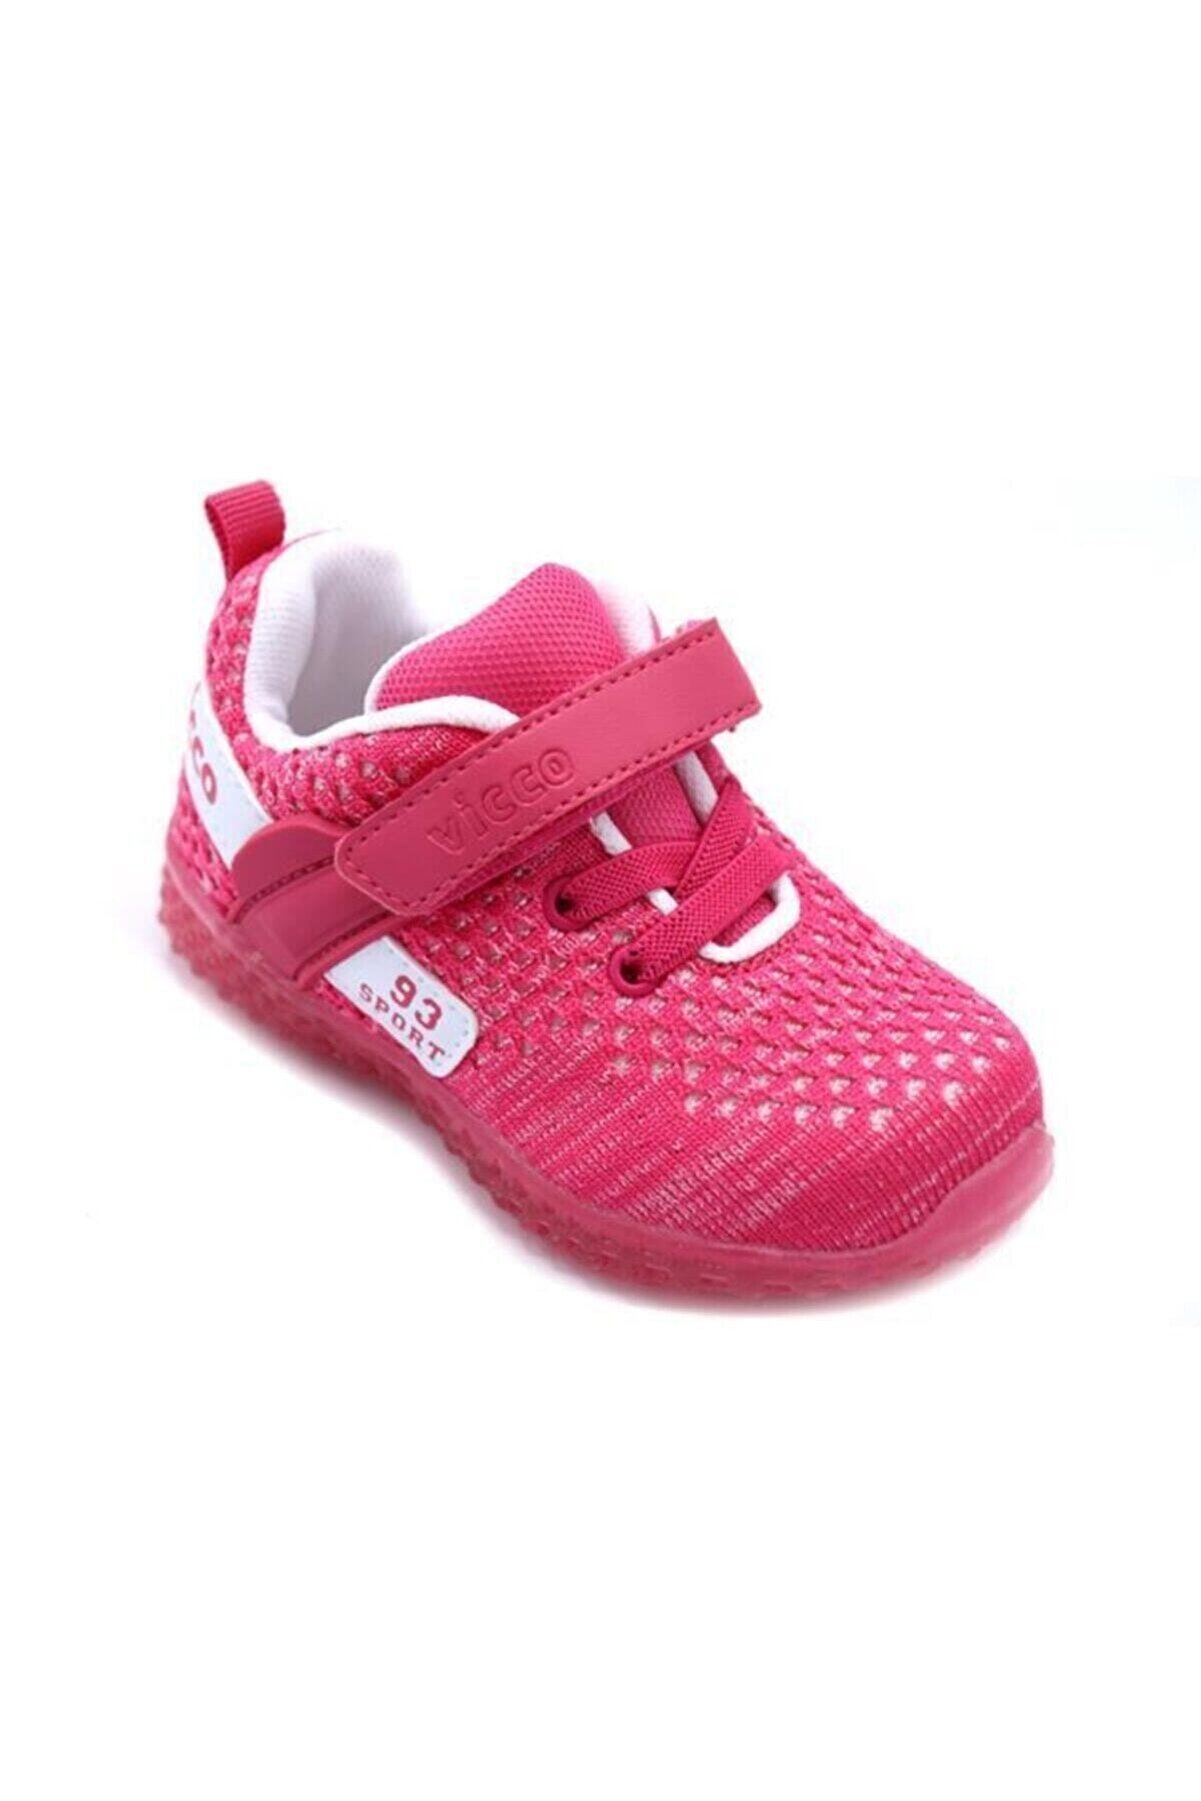 Vicco Kız Çocuk Fuşya Spor Ayakkabı B20y.104